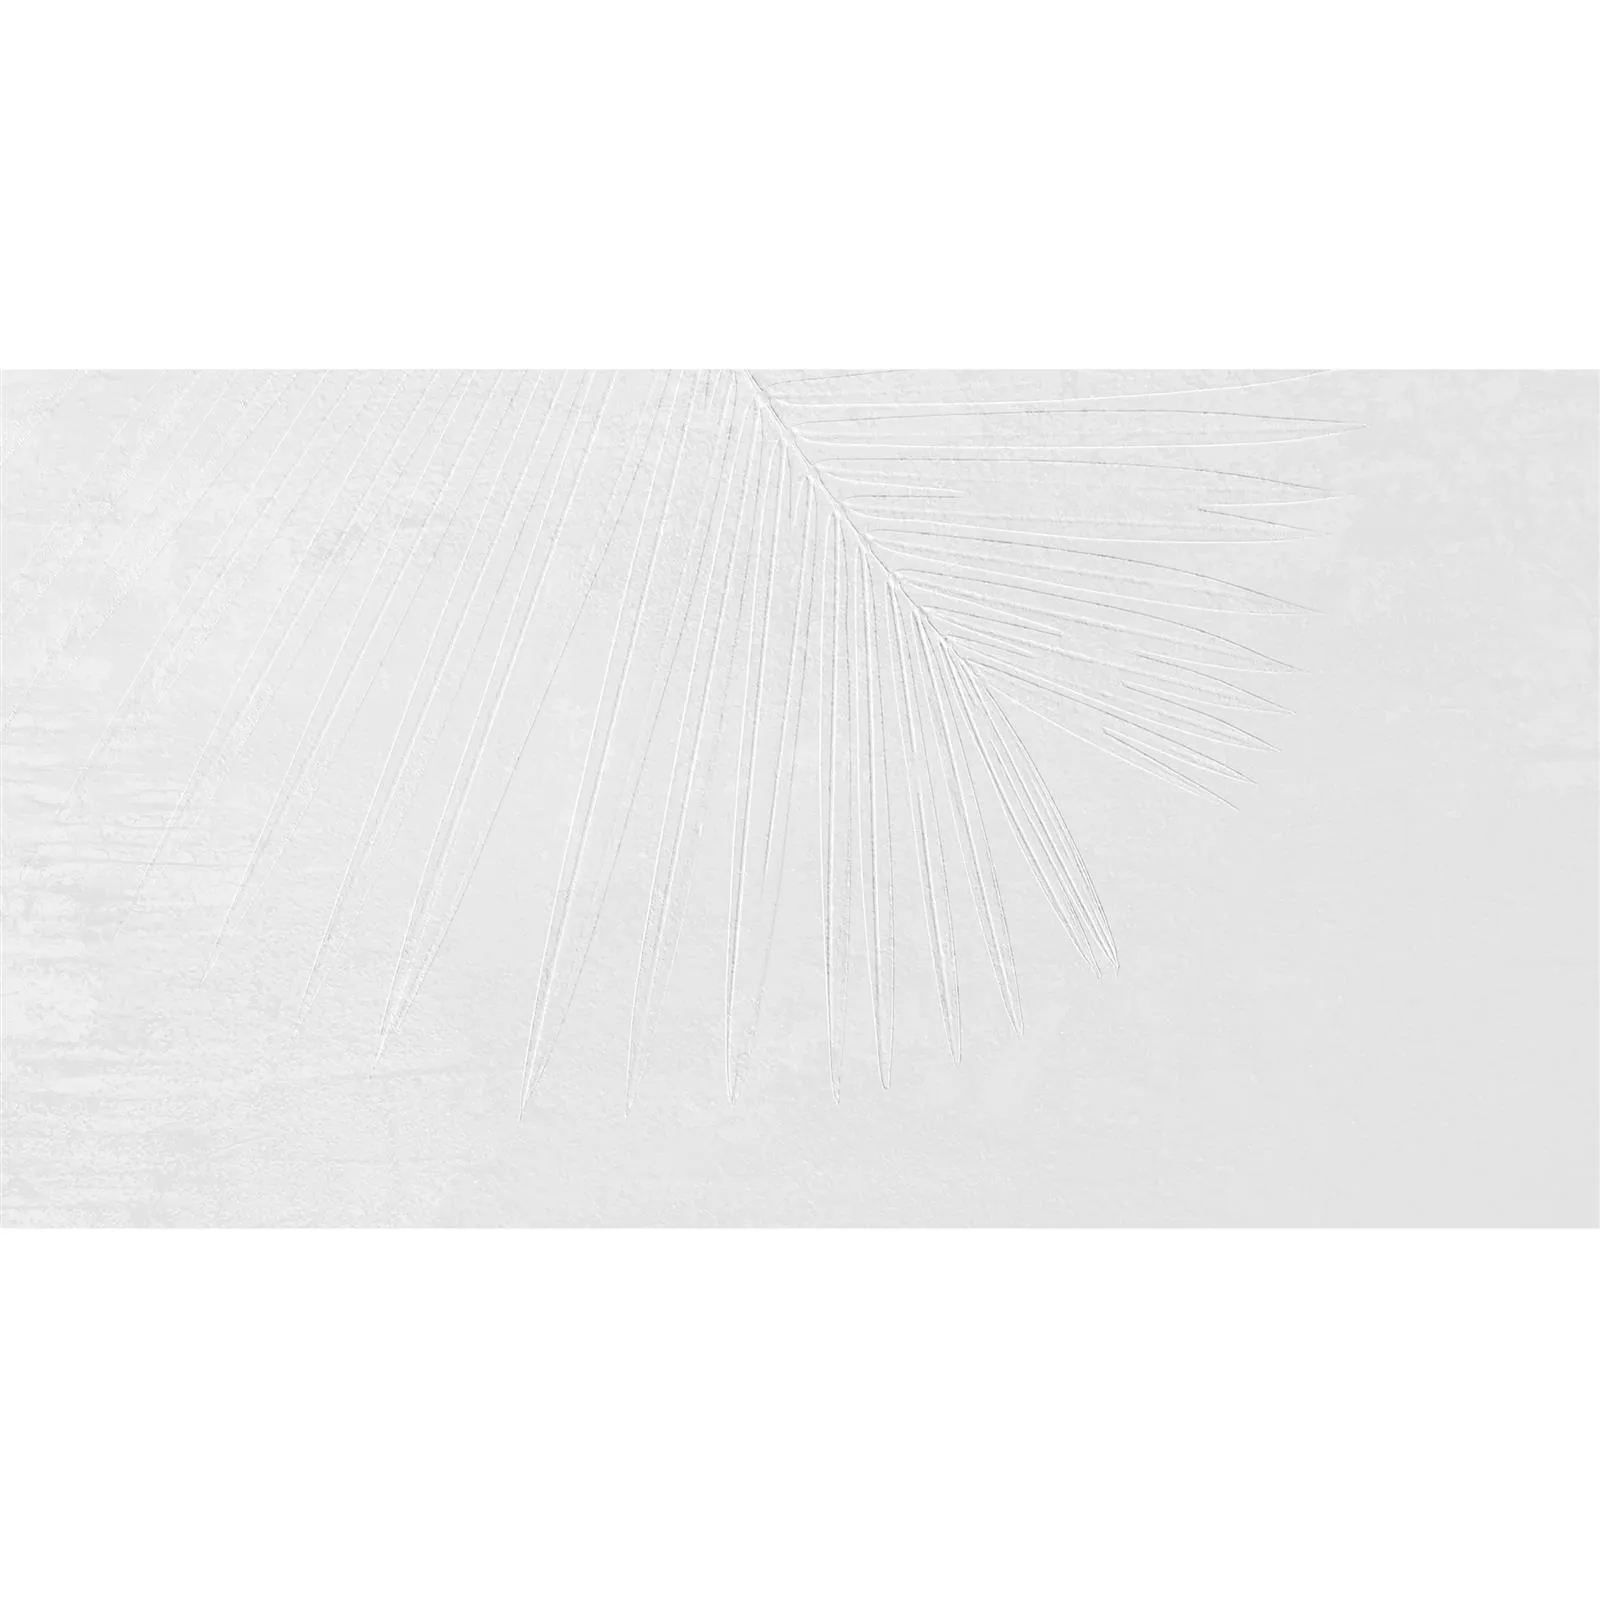 Πλακάκια Δαπέδου Freeland Πέτρινη Όψη R10/B Ασπρο 60x60cm Ντεκόρ